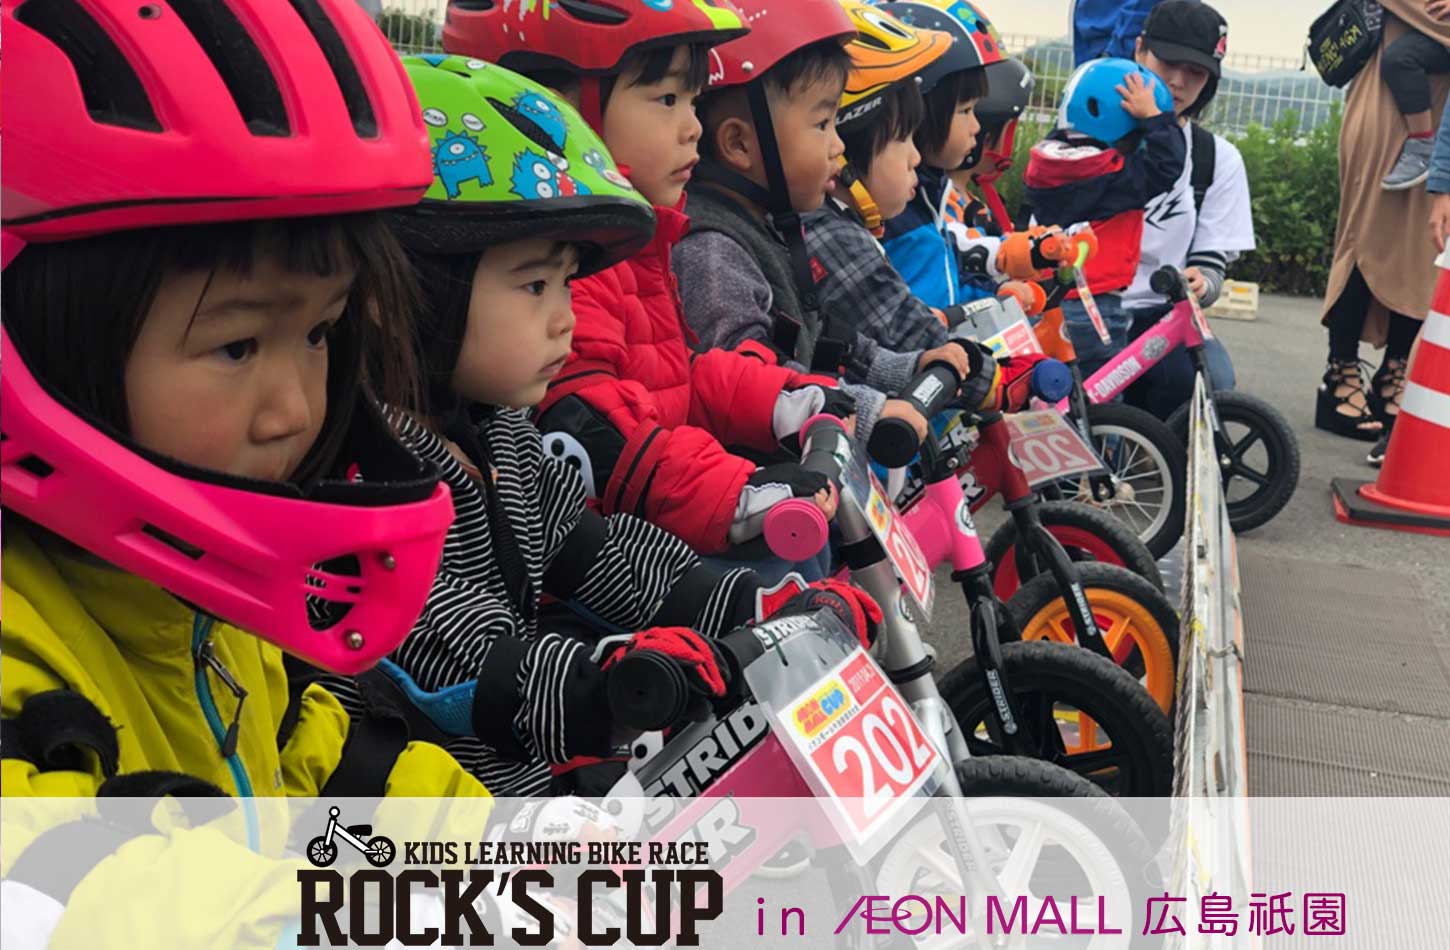 ROCKS CUP in AEON MALL 広島祇園